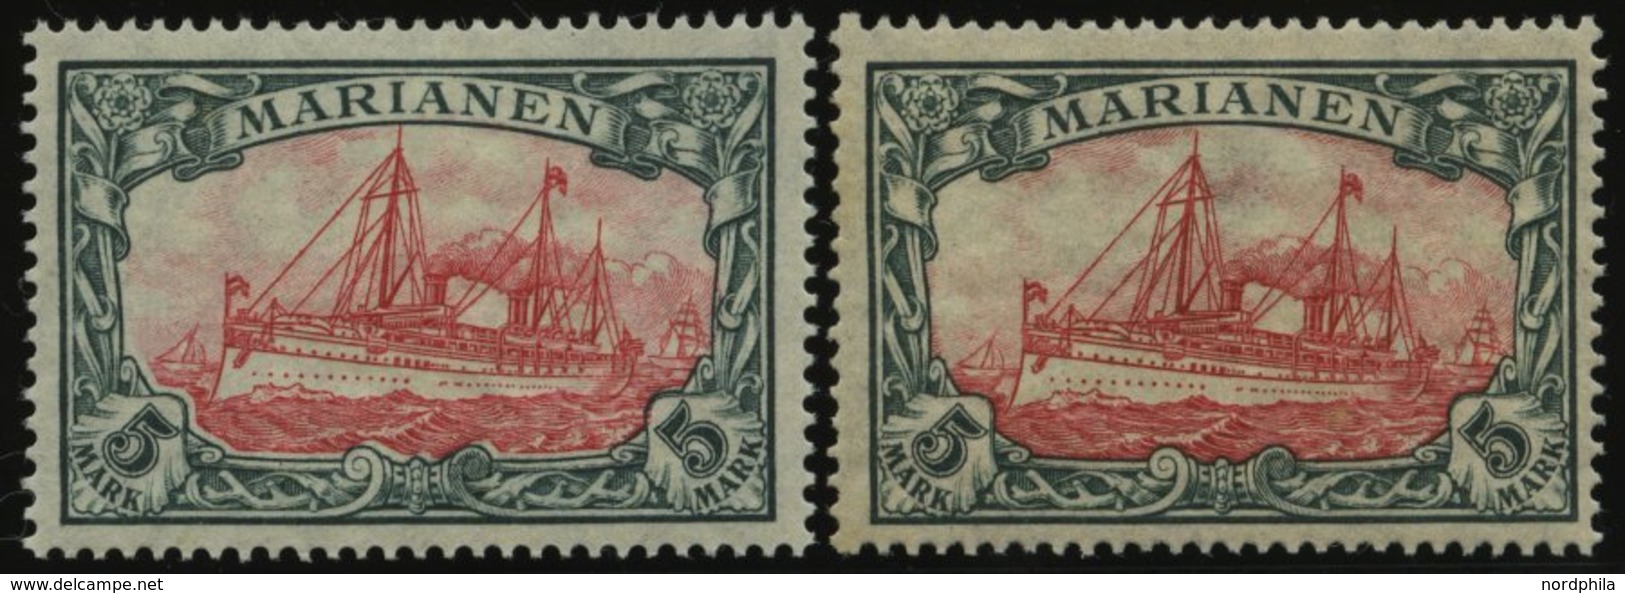 MARIANEN 21A/B *, 1916, 5 M., Mit Wz., Beide Zähnungen, Falzrest, 2 Prachtwerte, Mi. 90.- - Isole Marianne